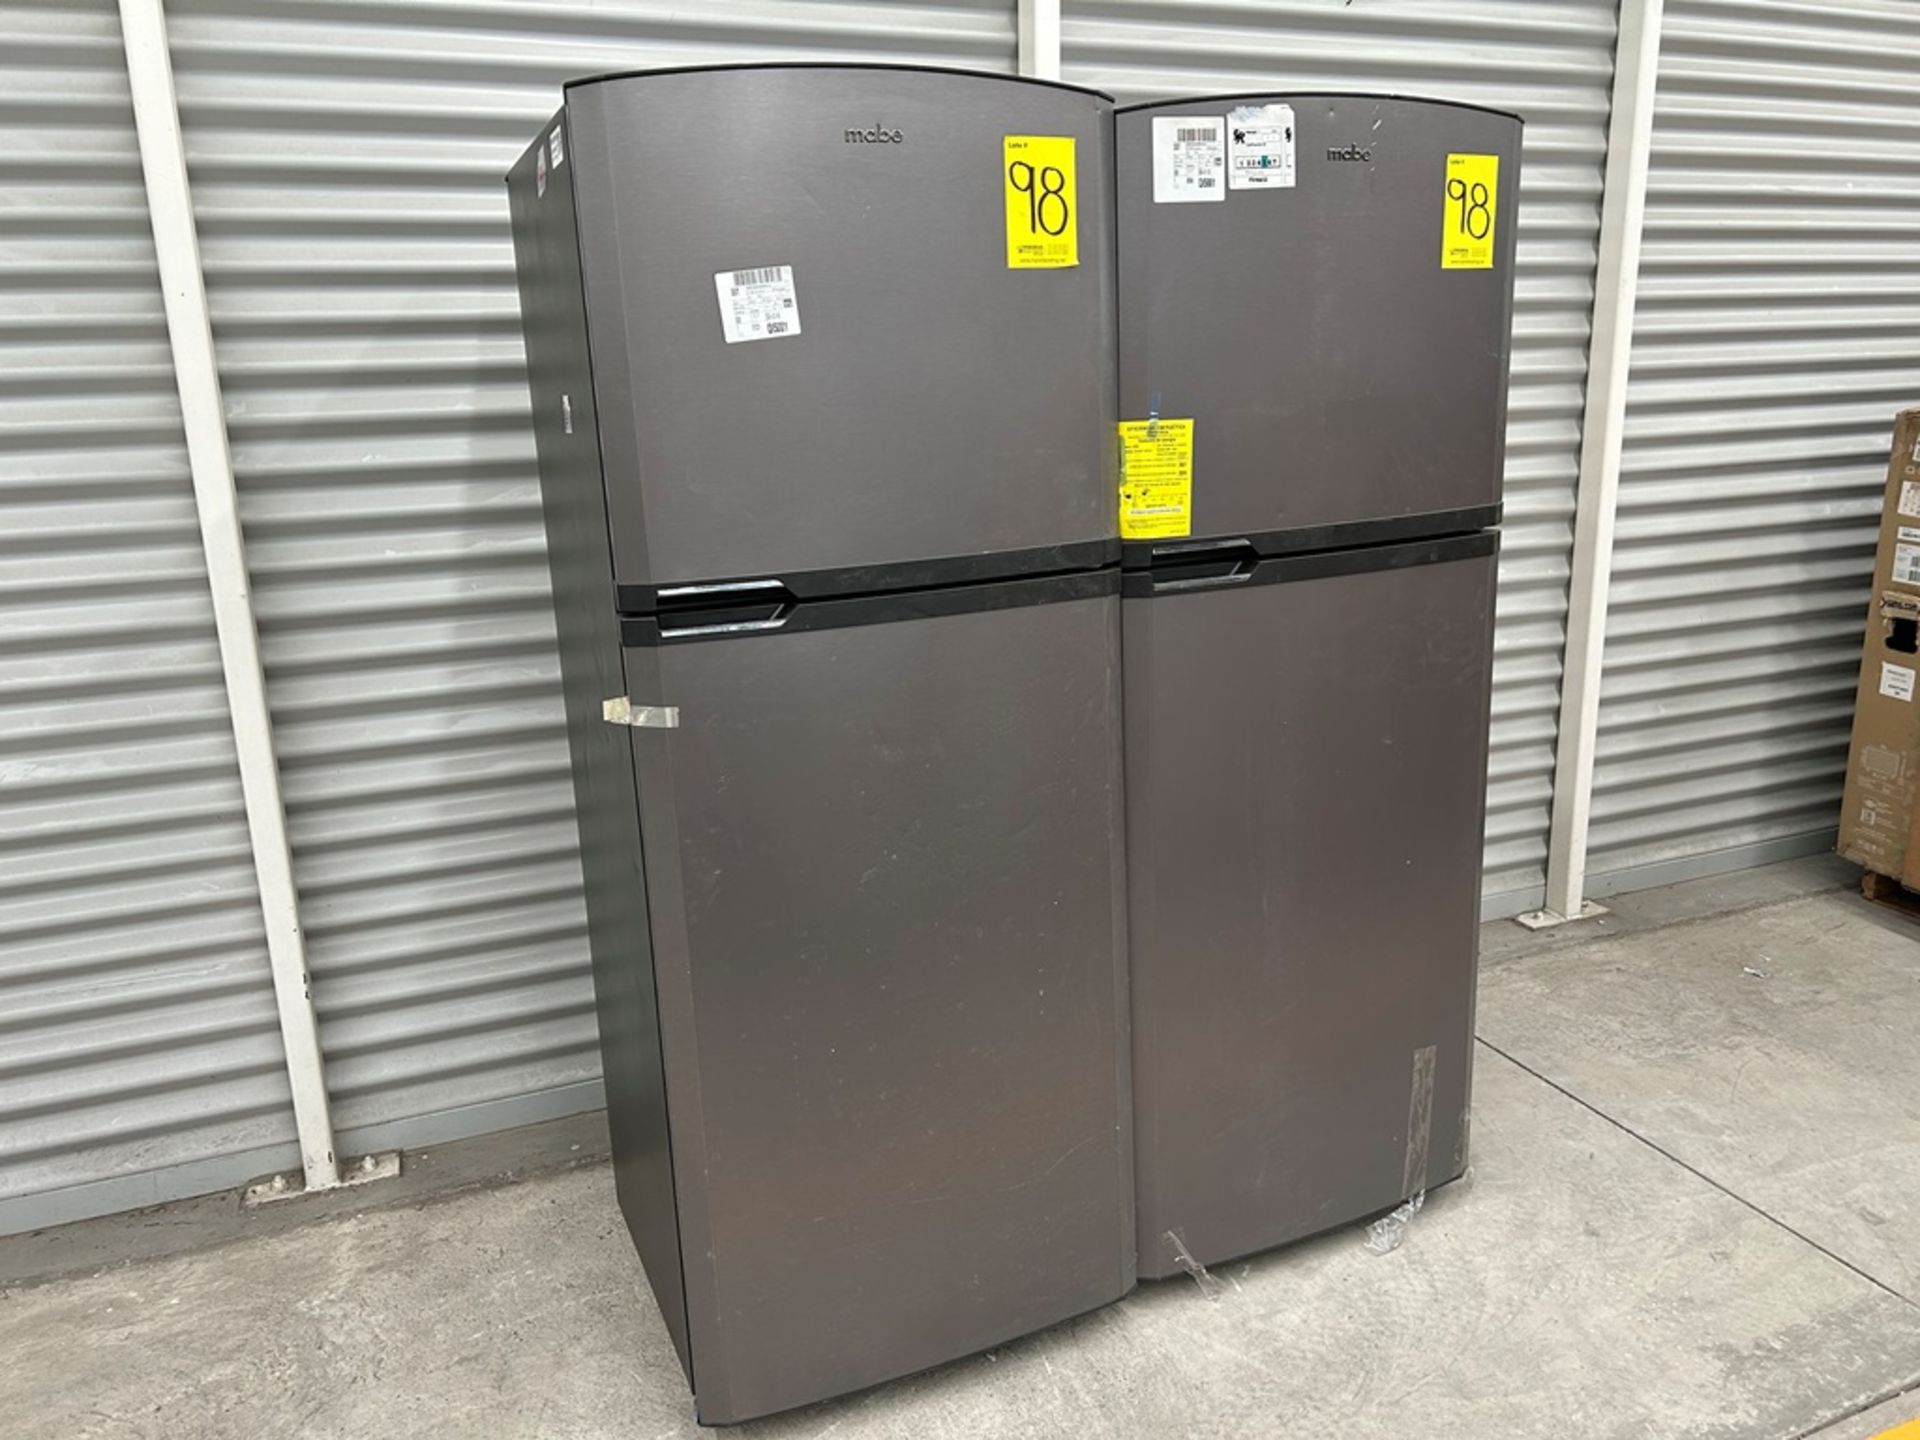 Lote de 2 refrigeradores contiene: 1 Refrigerador Marca MABE, Modelo RME360PVMRM0, Serie 04453, Col - Image 3 of 16